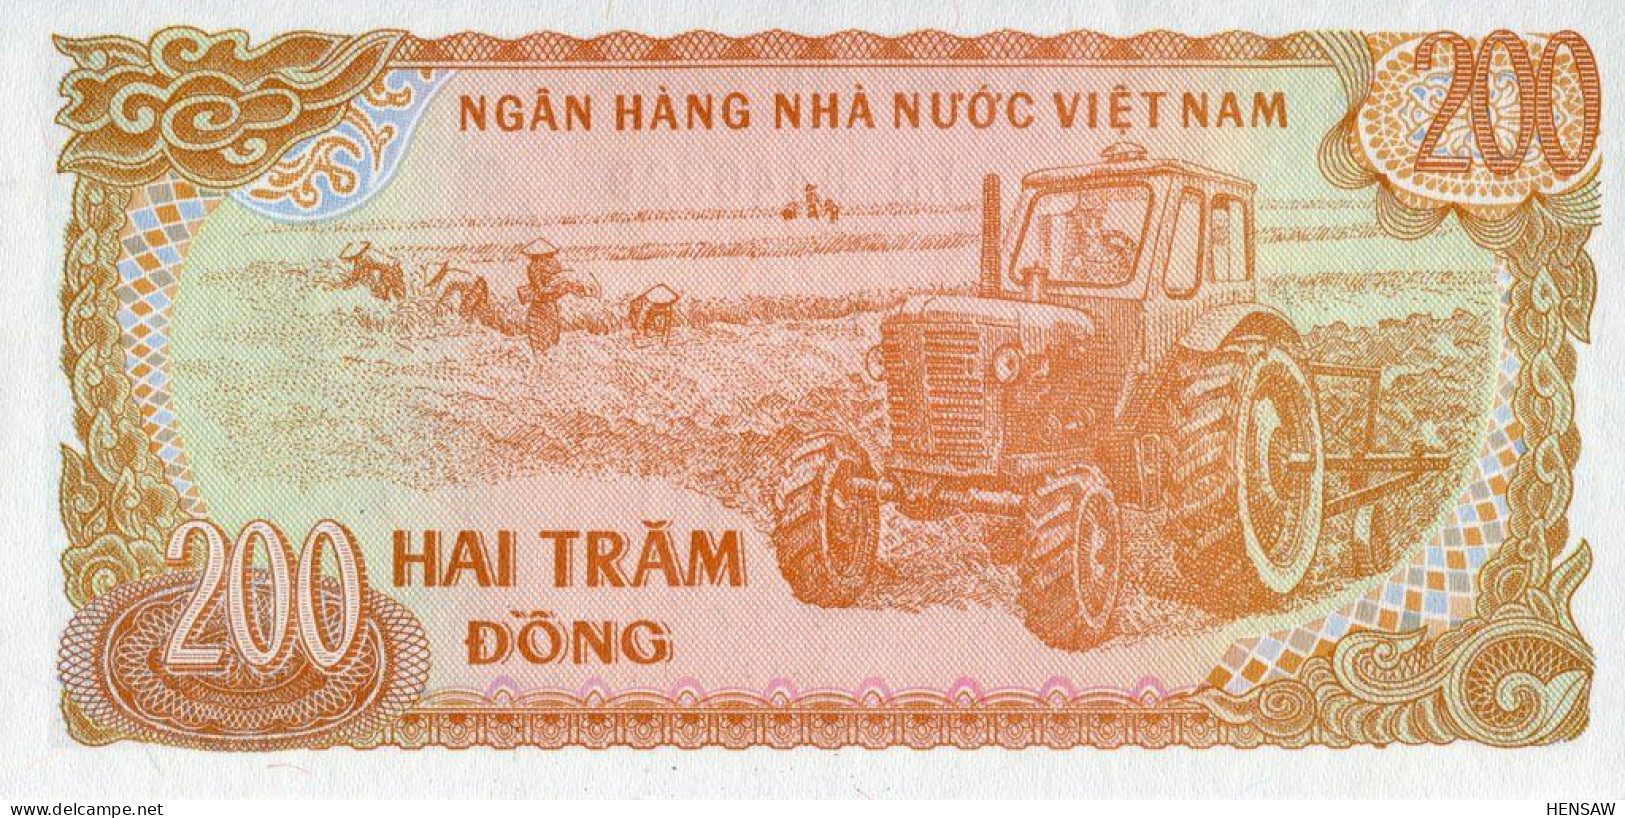 VIETNAM 200 DONG 1987 P 100c UNC SC NUEVO - Vietnam